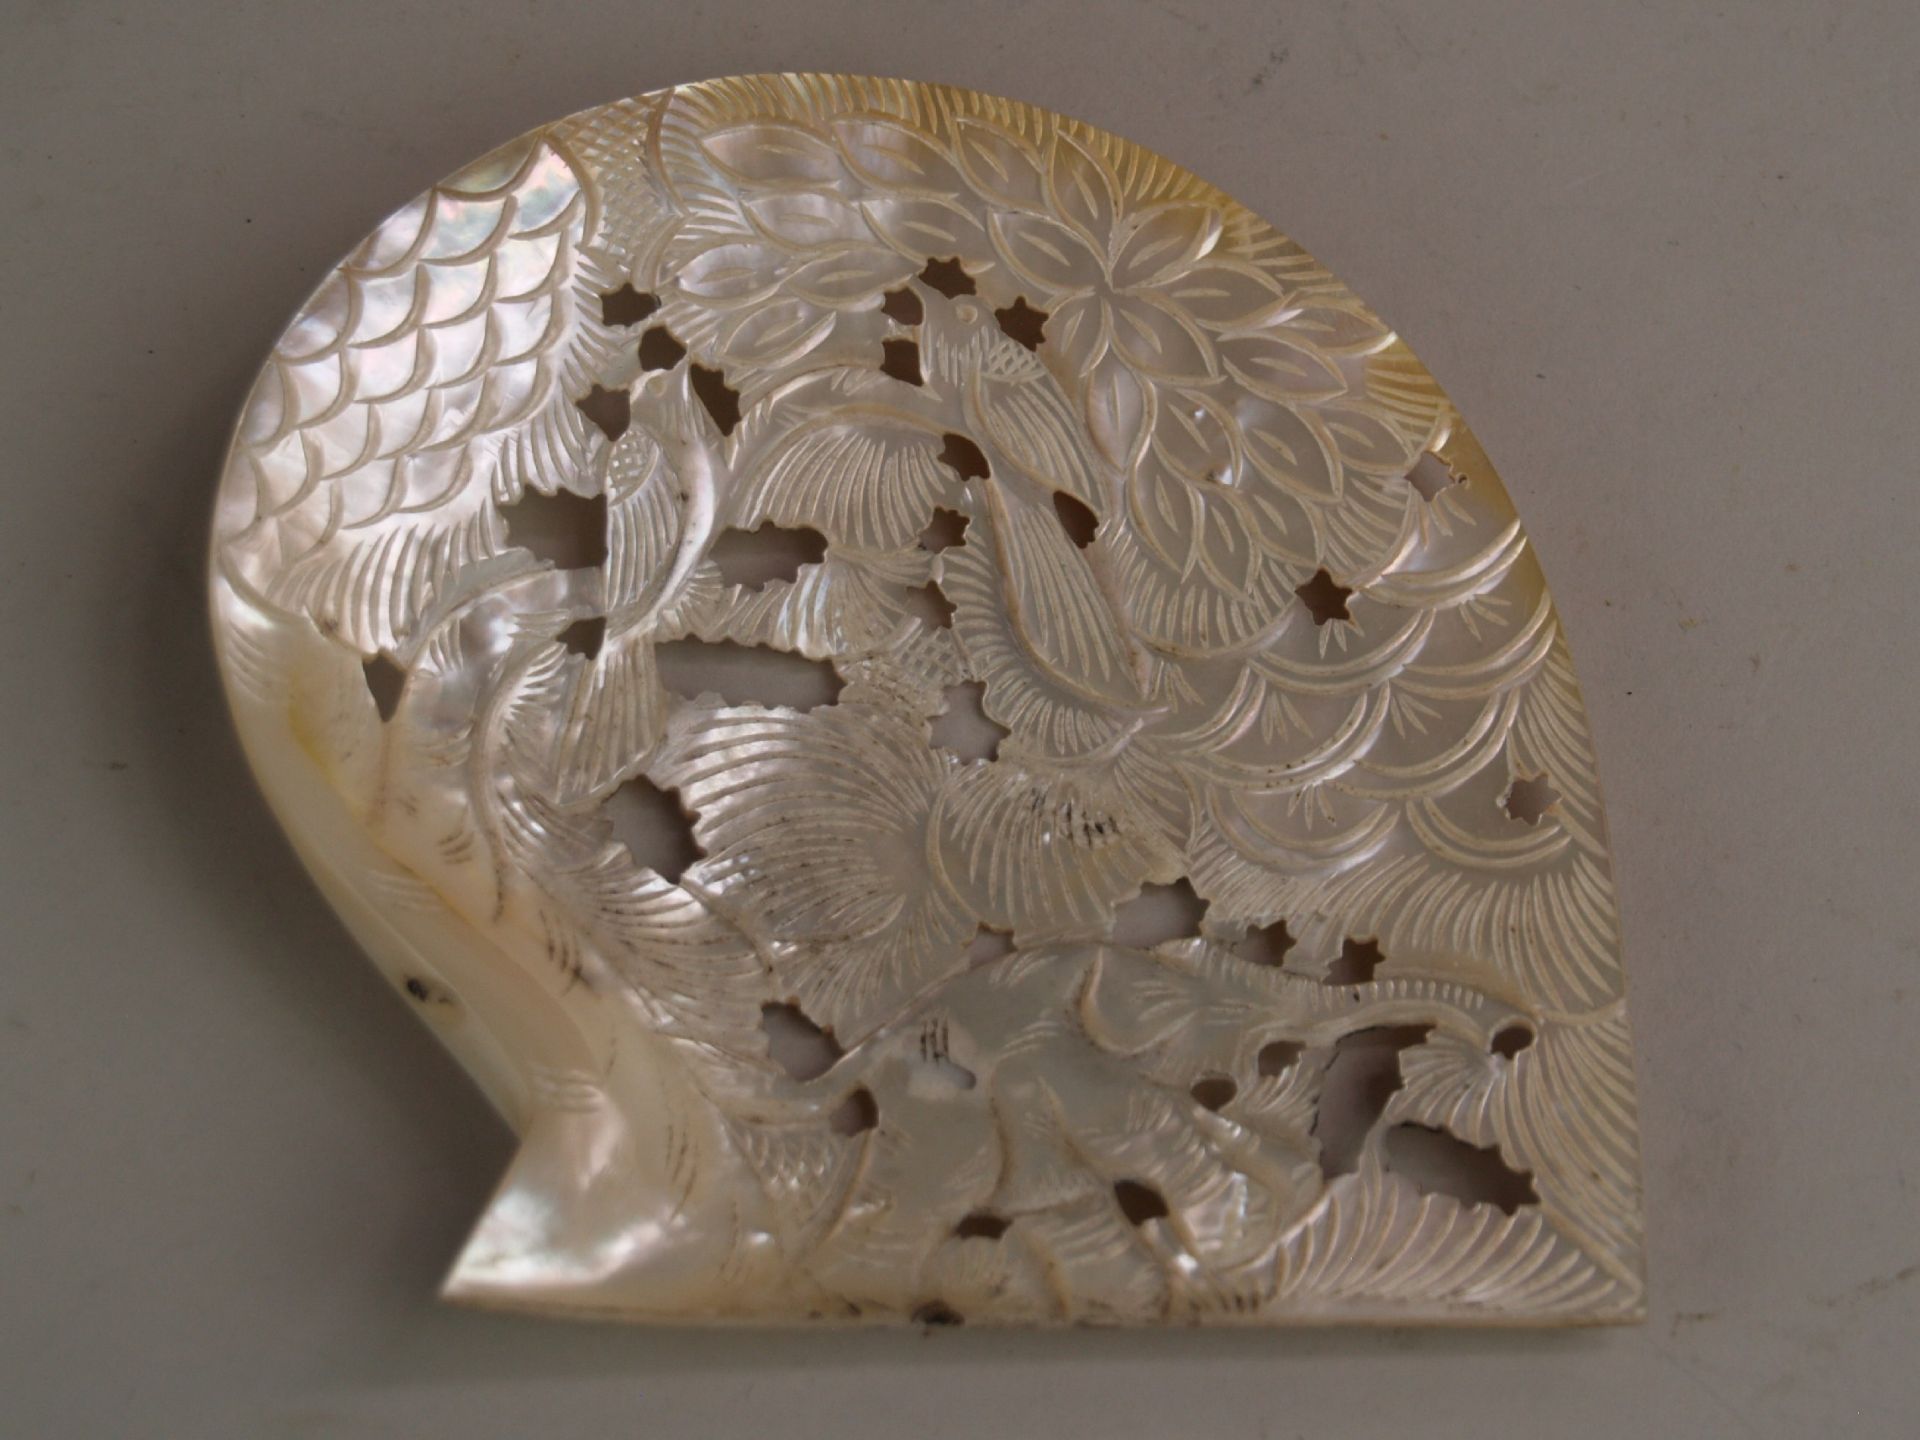 Muschelschale aus Perlmutt- florale Durchbrucharbeit,ca.15,5x15,5cm